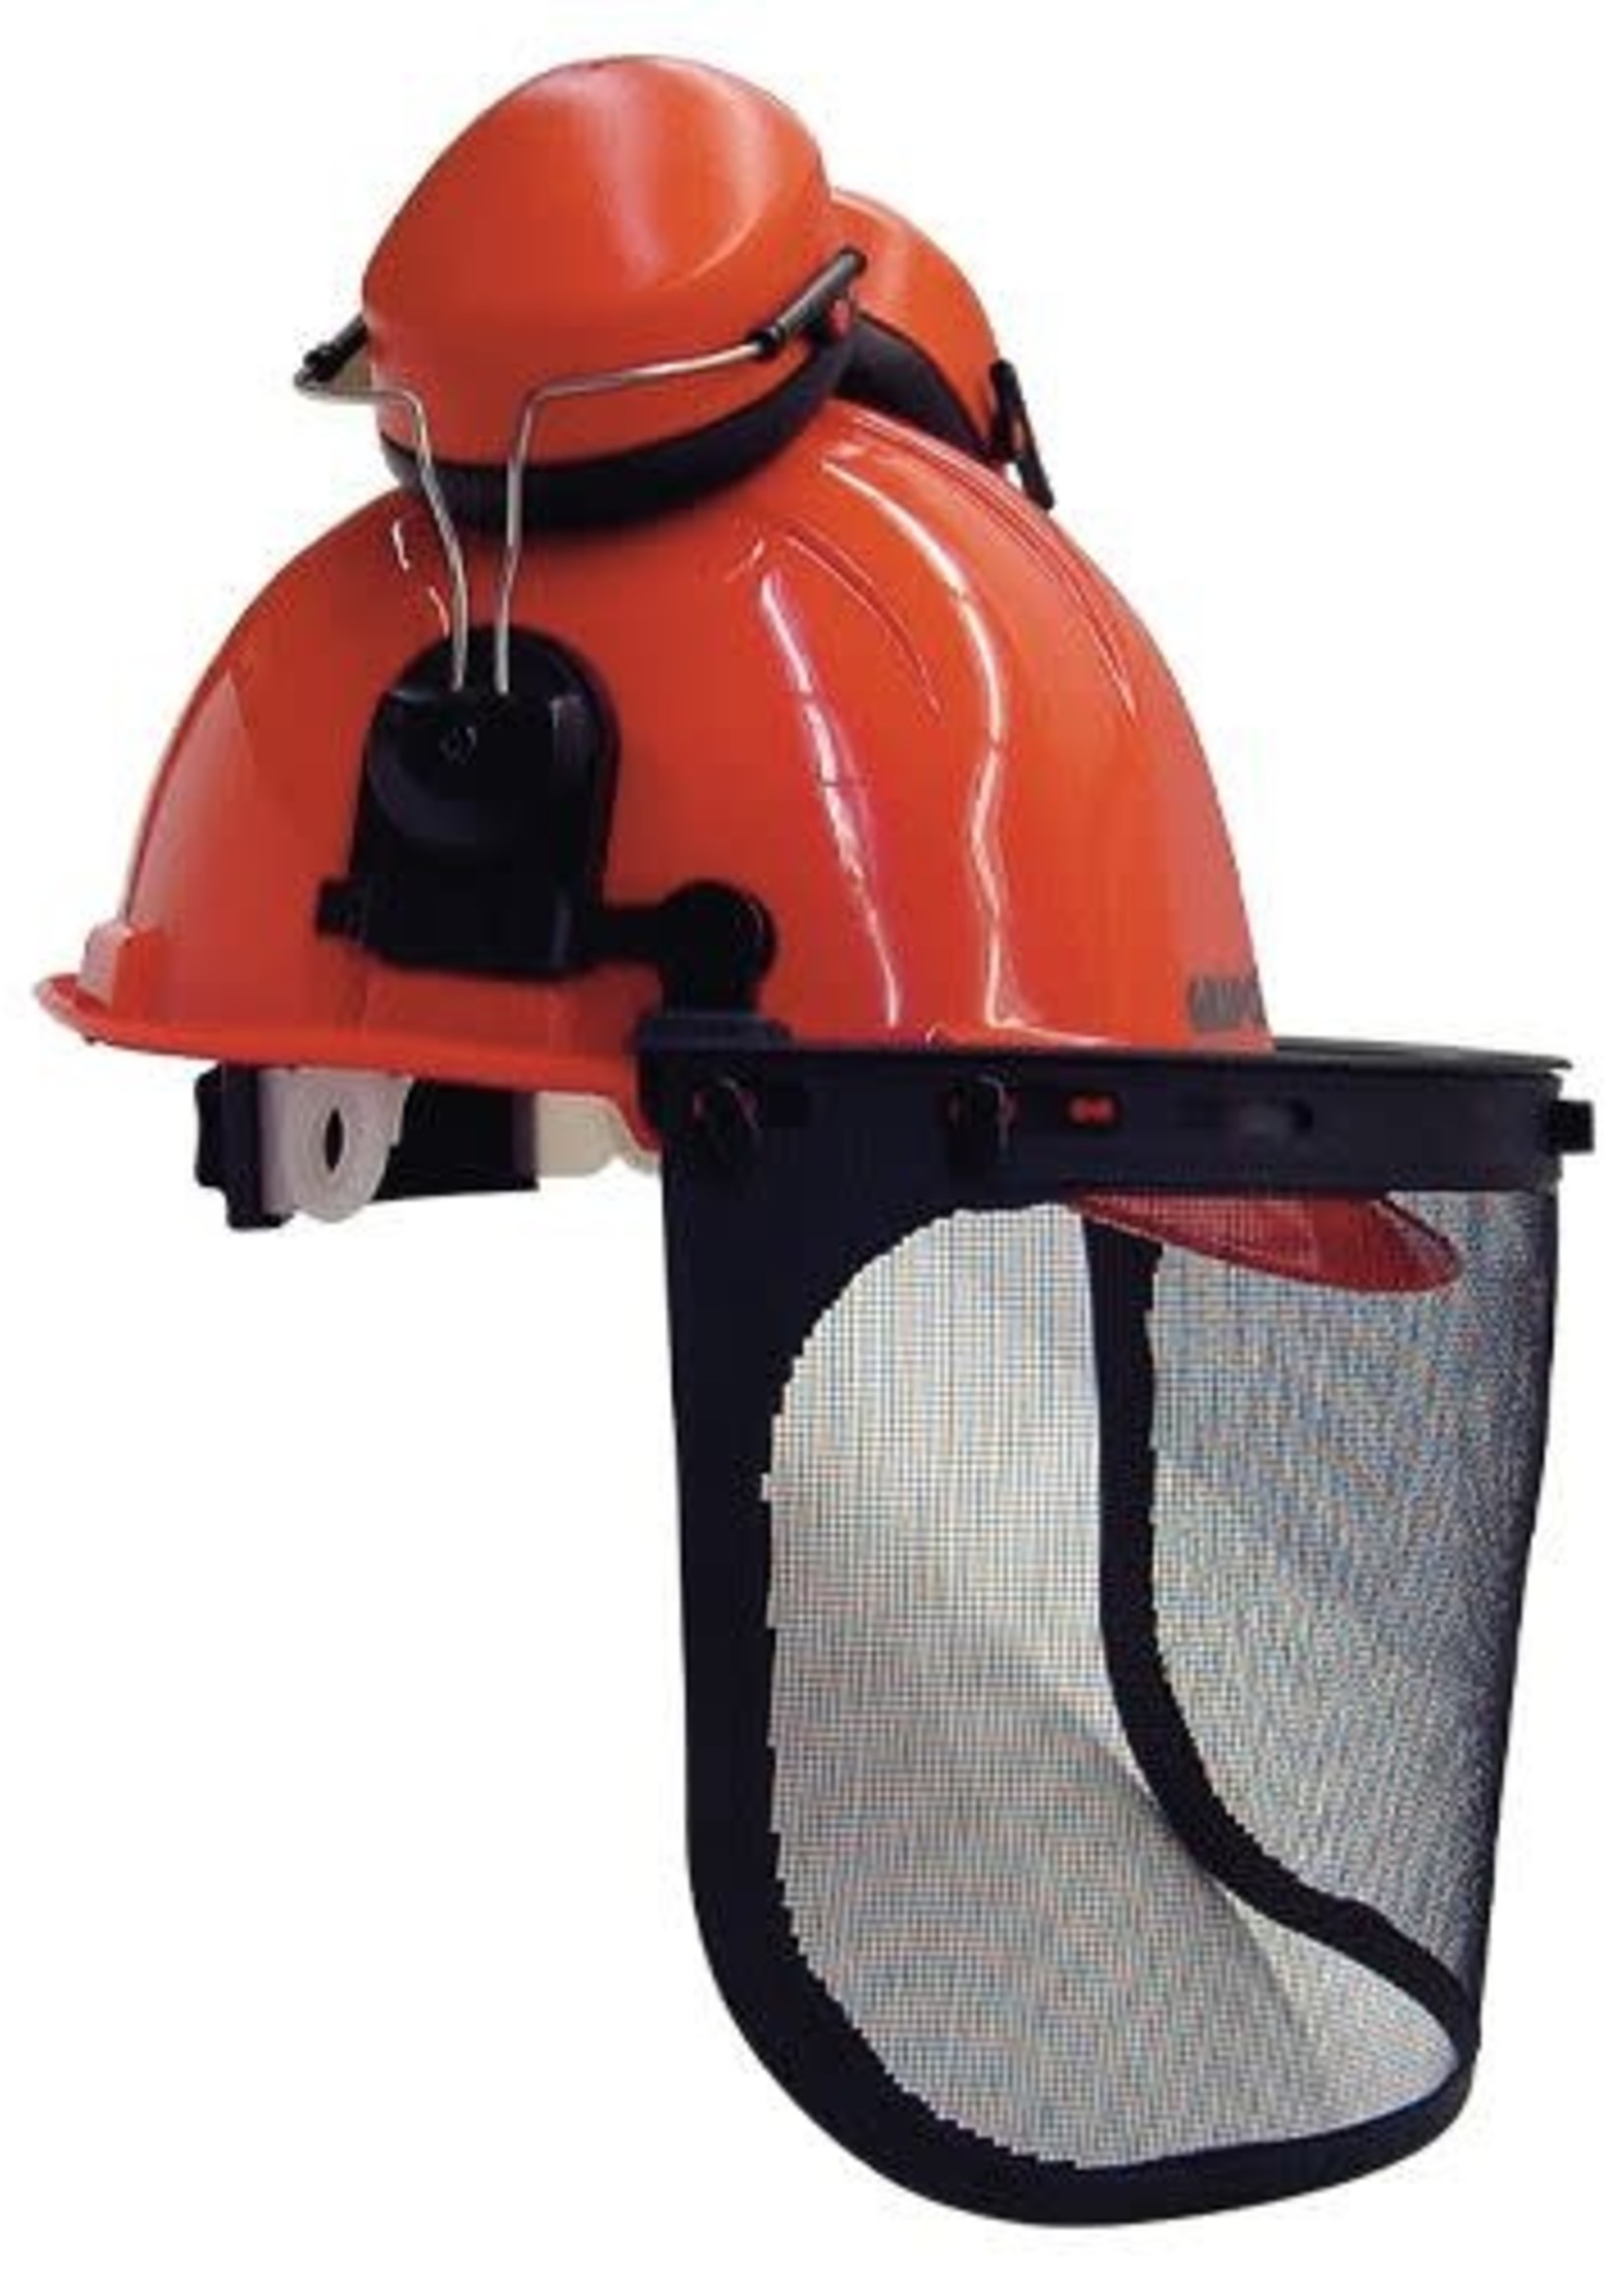 Casque forestier SINGER orange / casque coquille anti bruit / porte visière  / visière grillagée - HGCF01